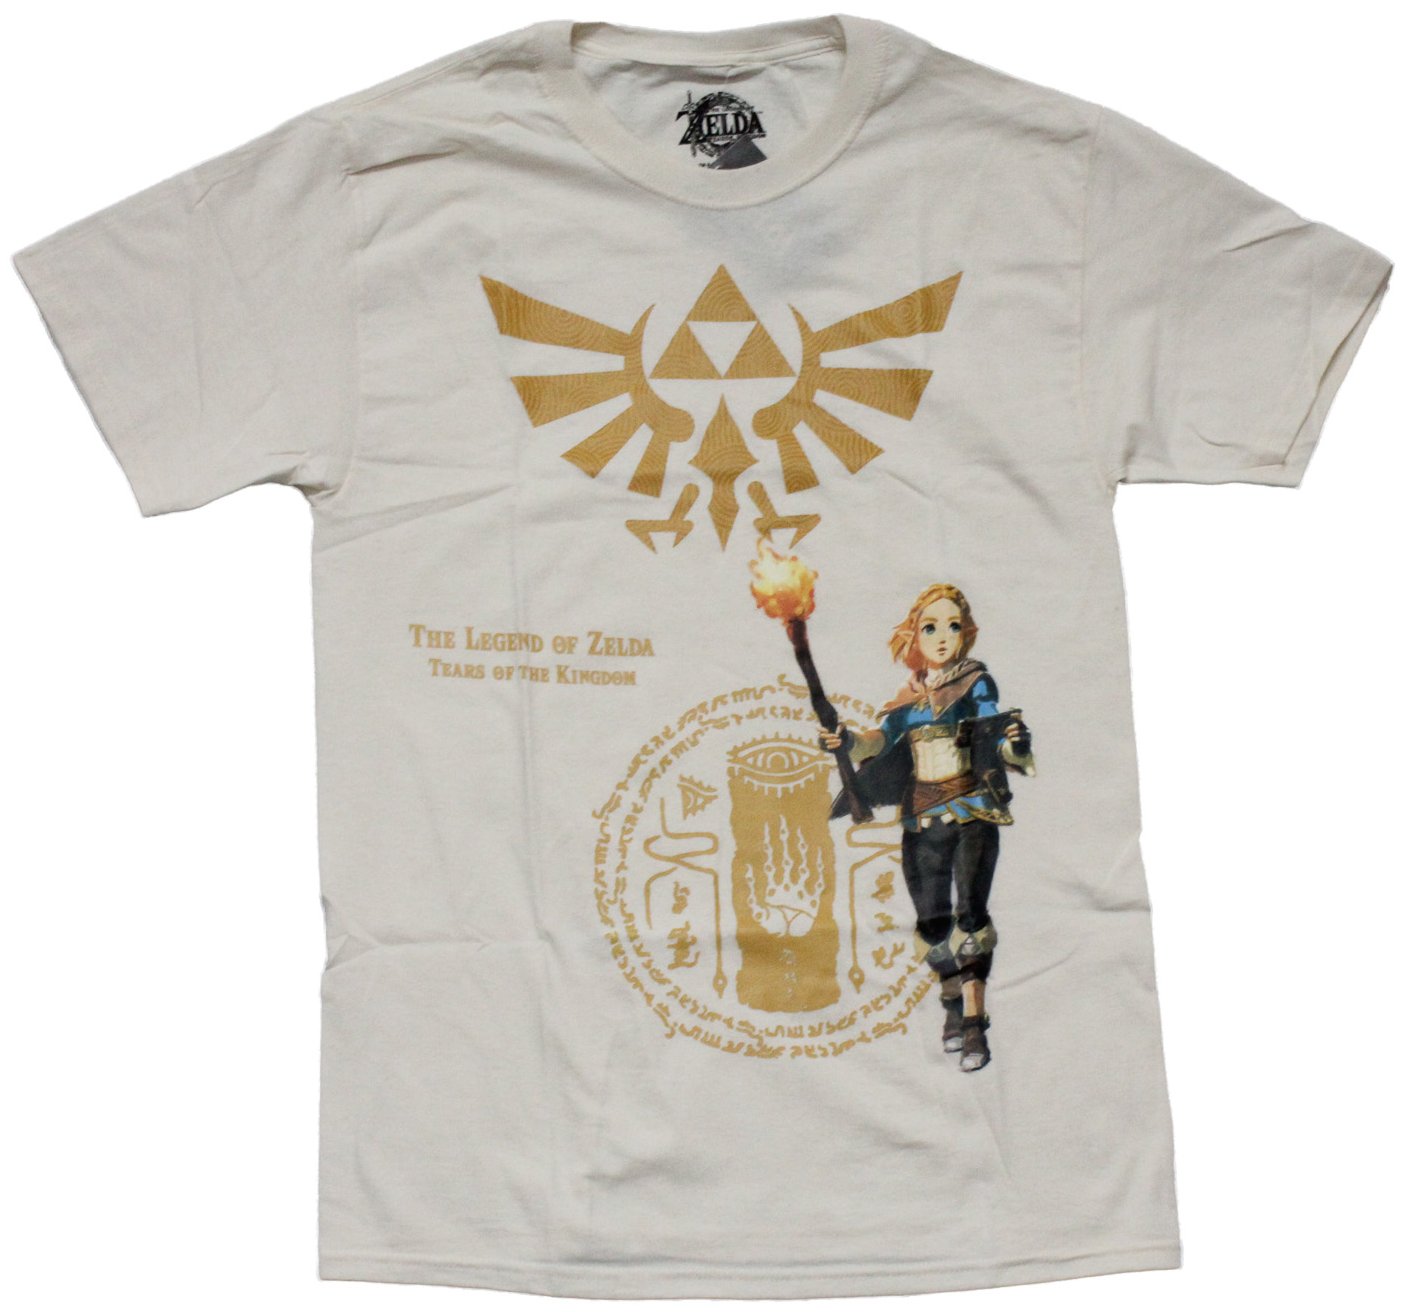 Legend of Zelda Mens T-Shirt - Tears of the Kingdom Triforce Link Torch